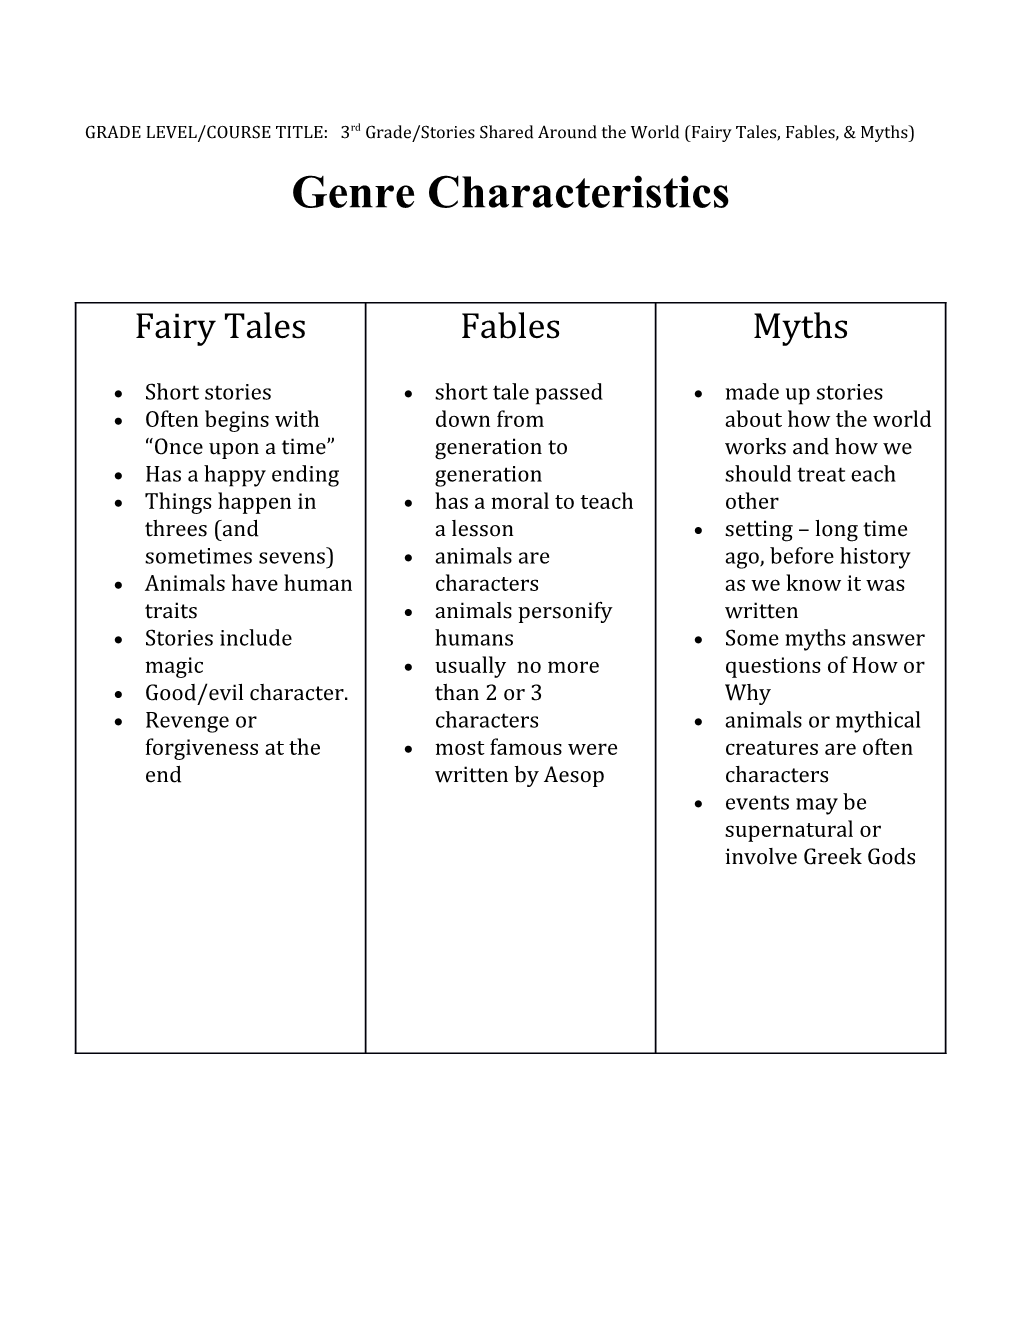 Genre Characteristics